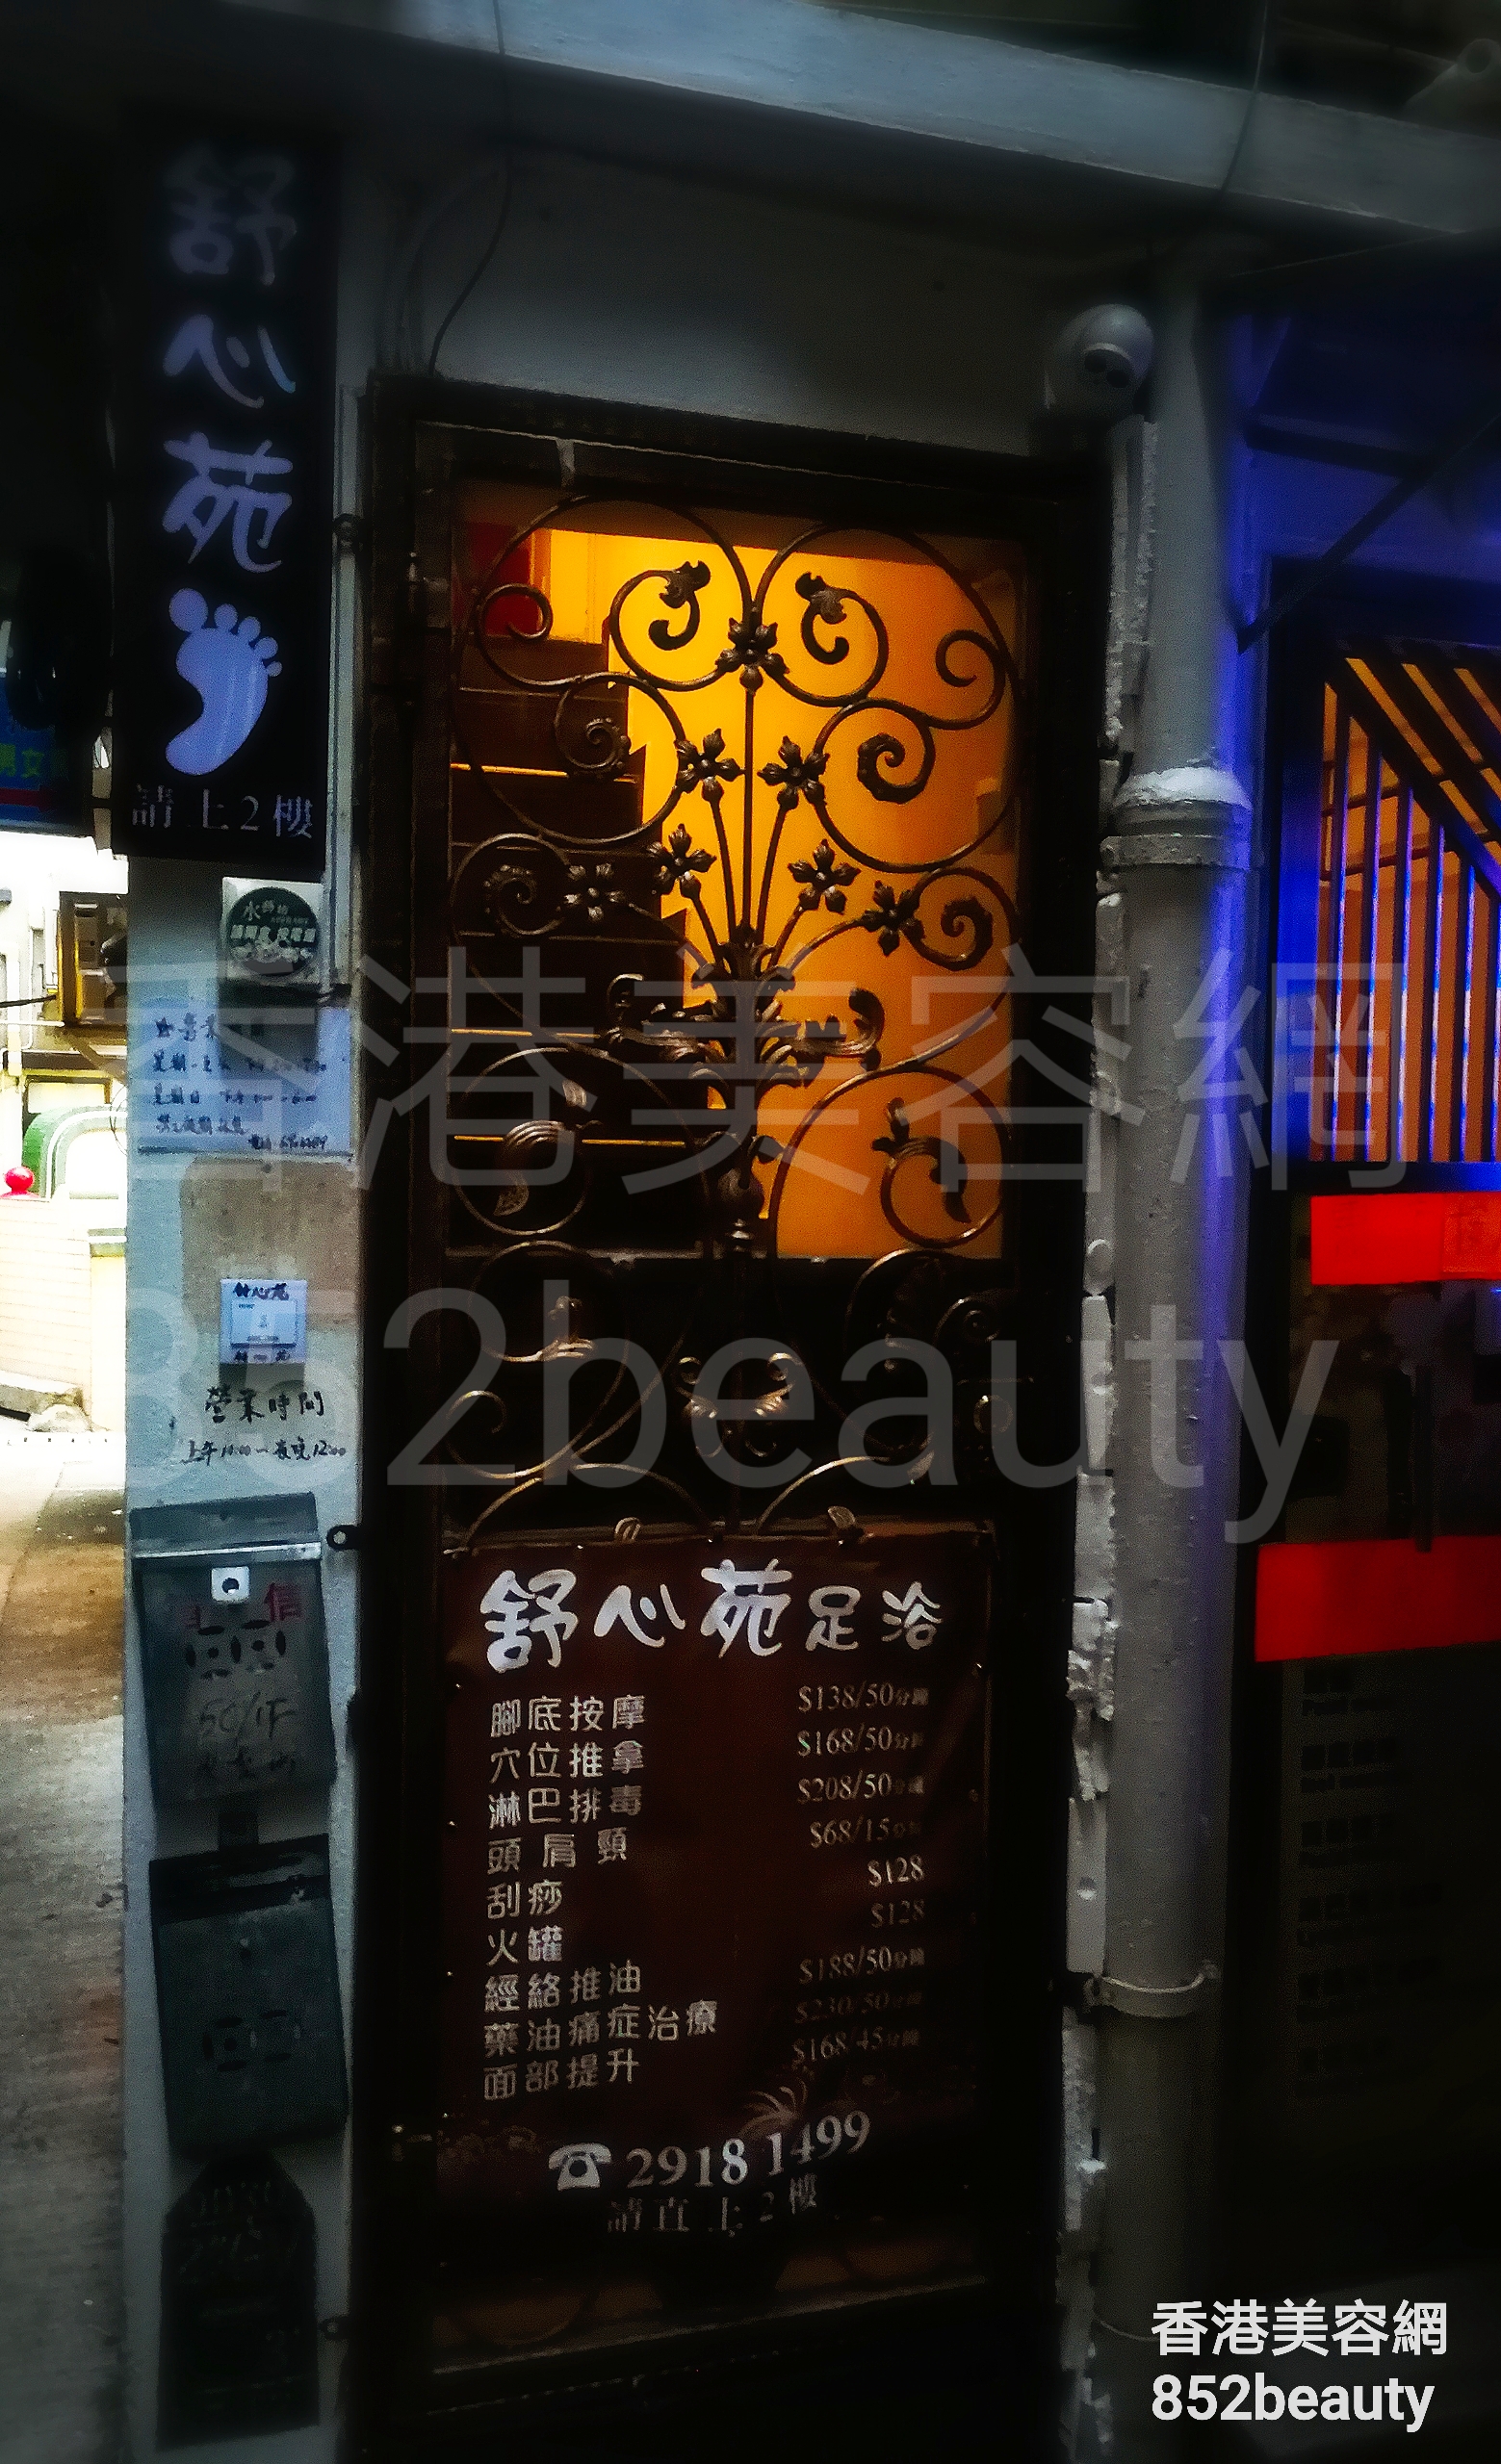 香港美容網 Hong Kong Beauty Salon 美容院 / 美容師: 舒心苑 足浴